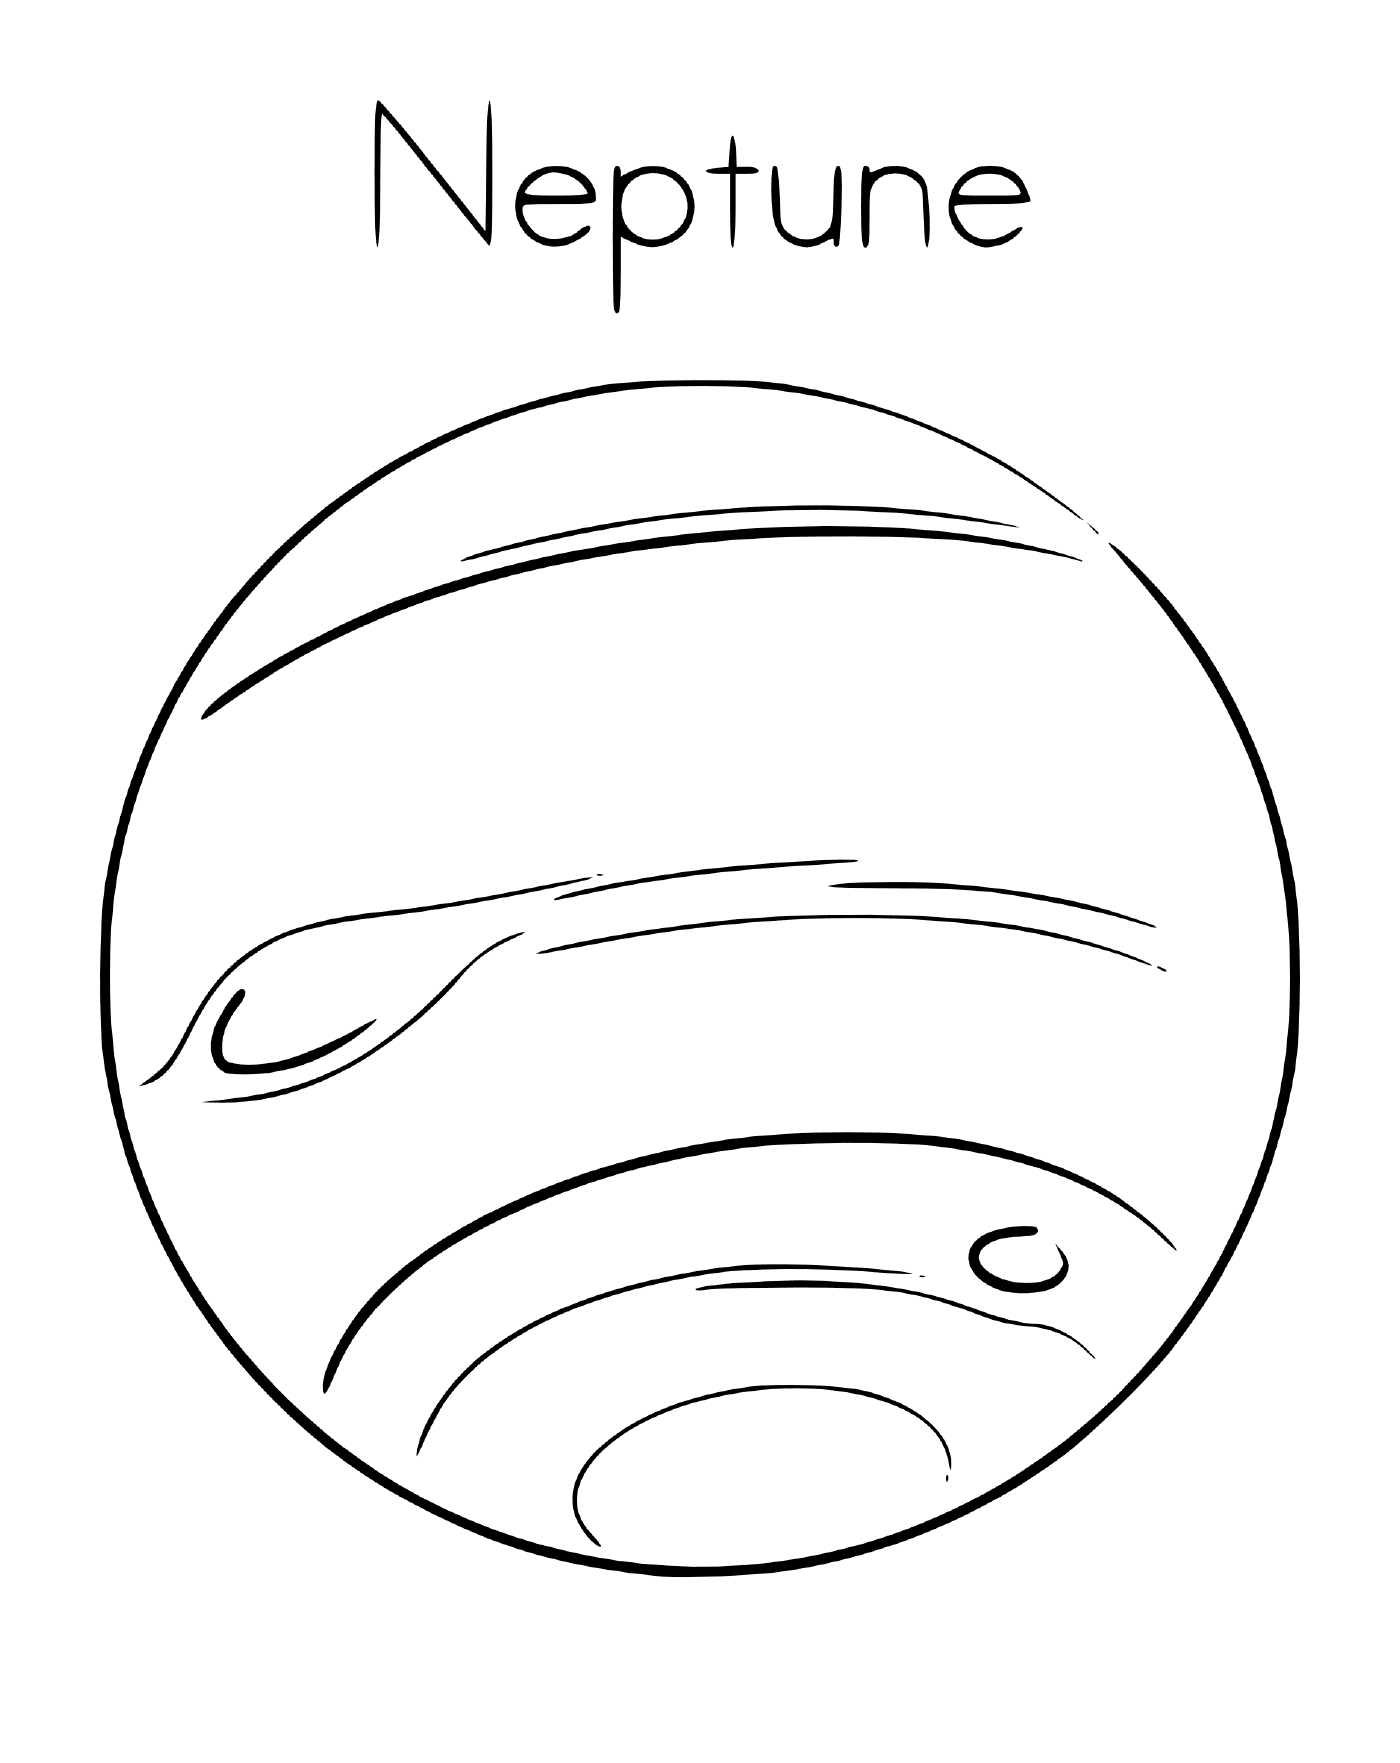  Planeta Netuno no espaço 